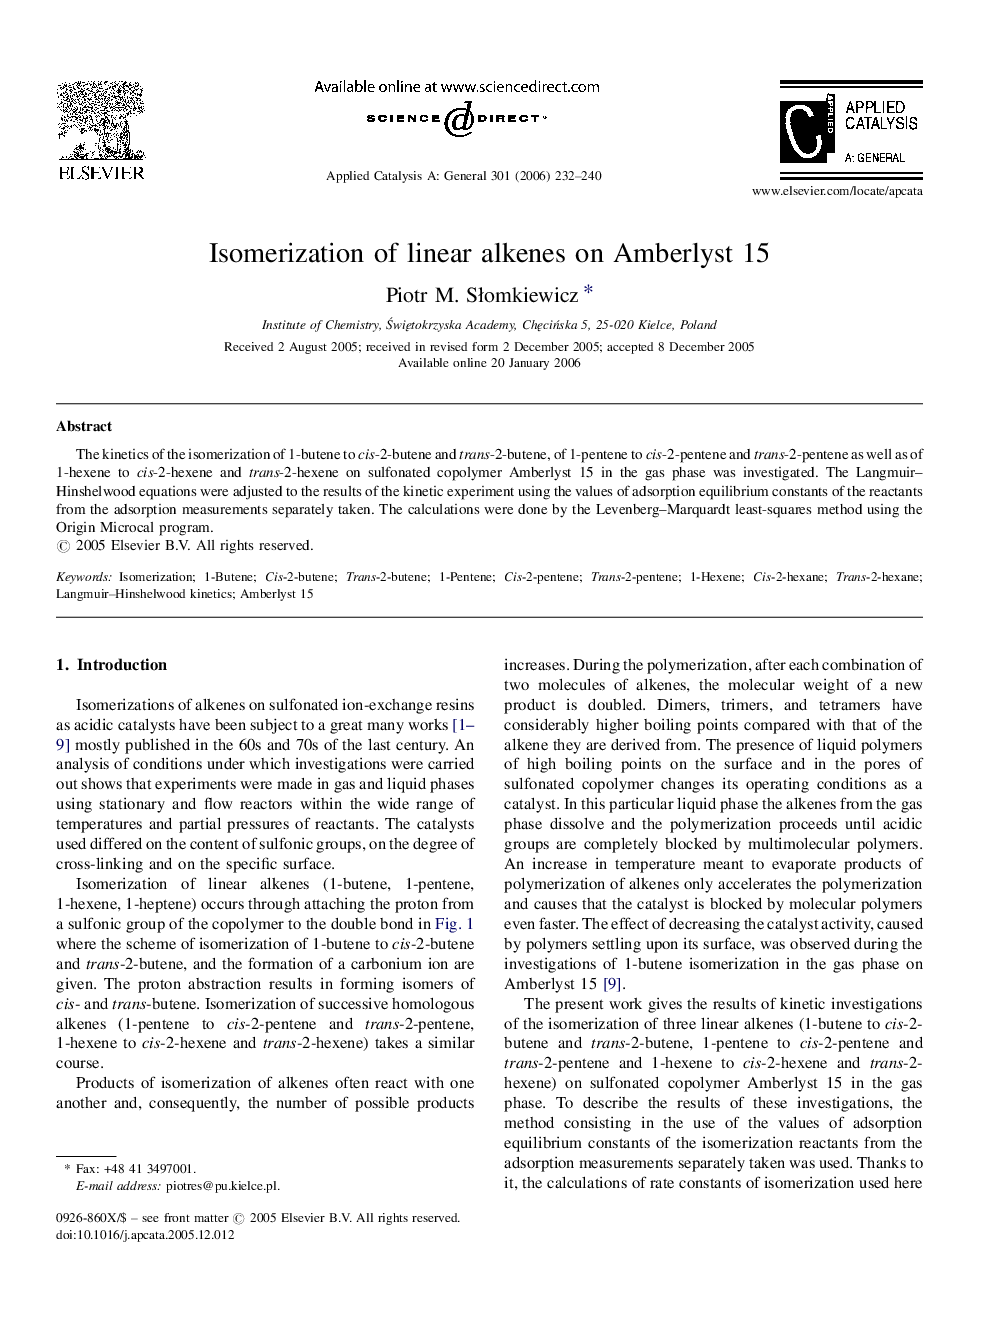 Isomerization of linear alkenes on Amberlyst 15